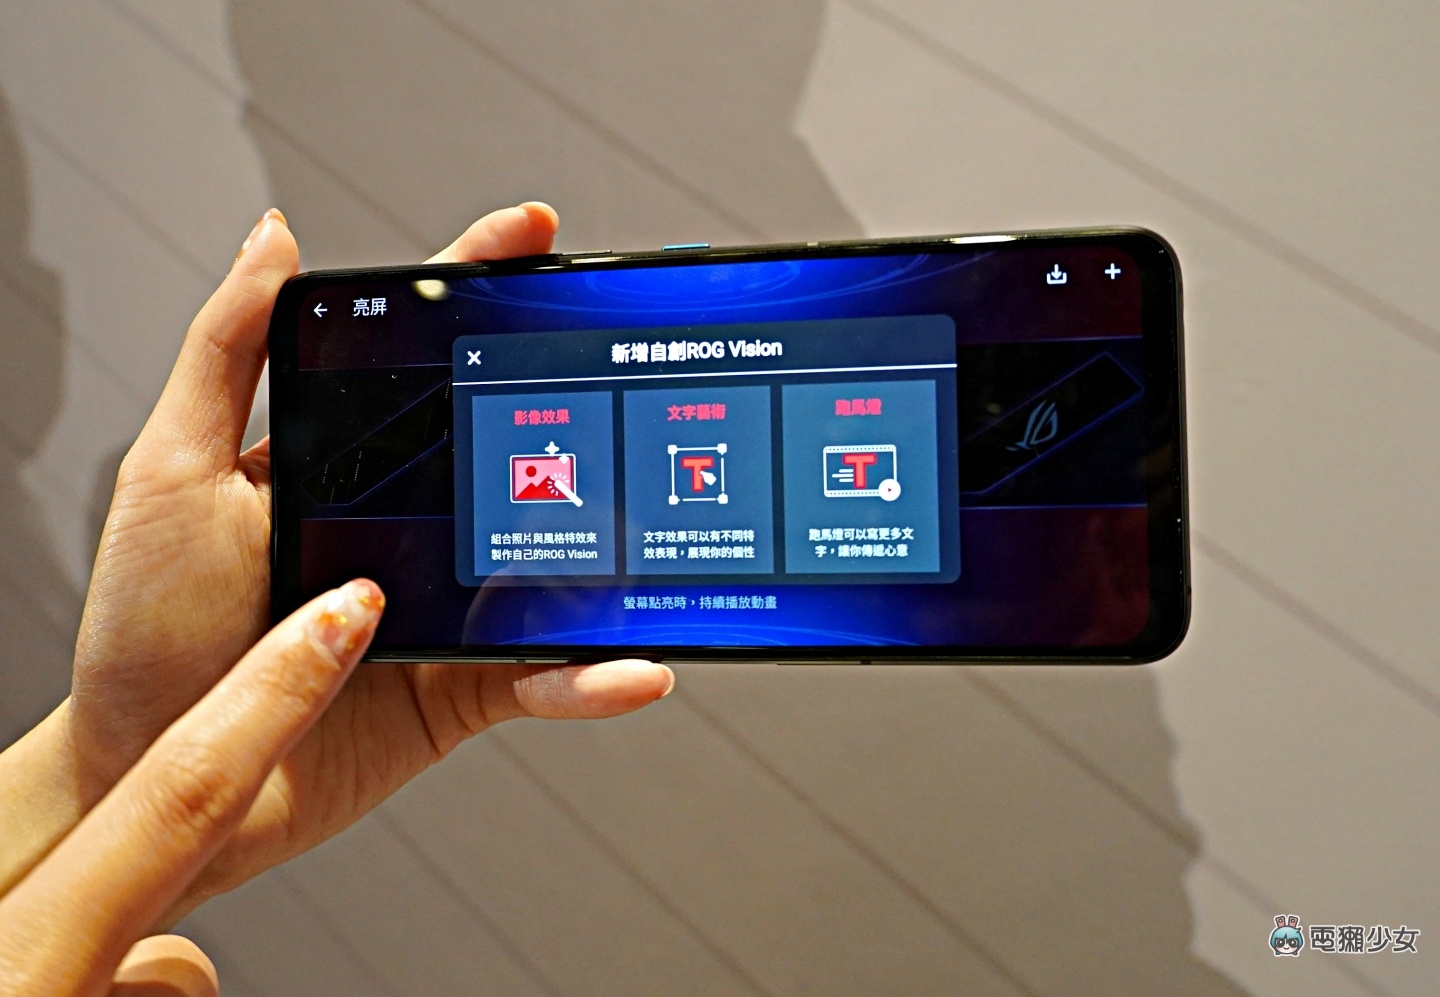 出門｜『 ROG Phone 5 』黑白兩色超殺登場！全新點陣設計有夠炫砲！全球首款 18GB RAM 的 ROG Phone 5 Ultimate 也來啦